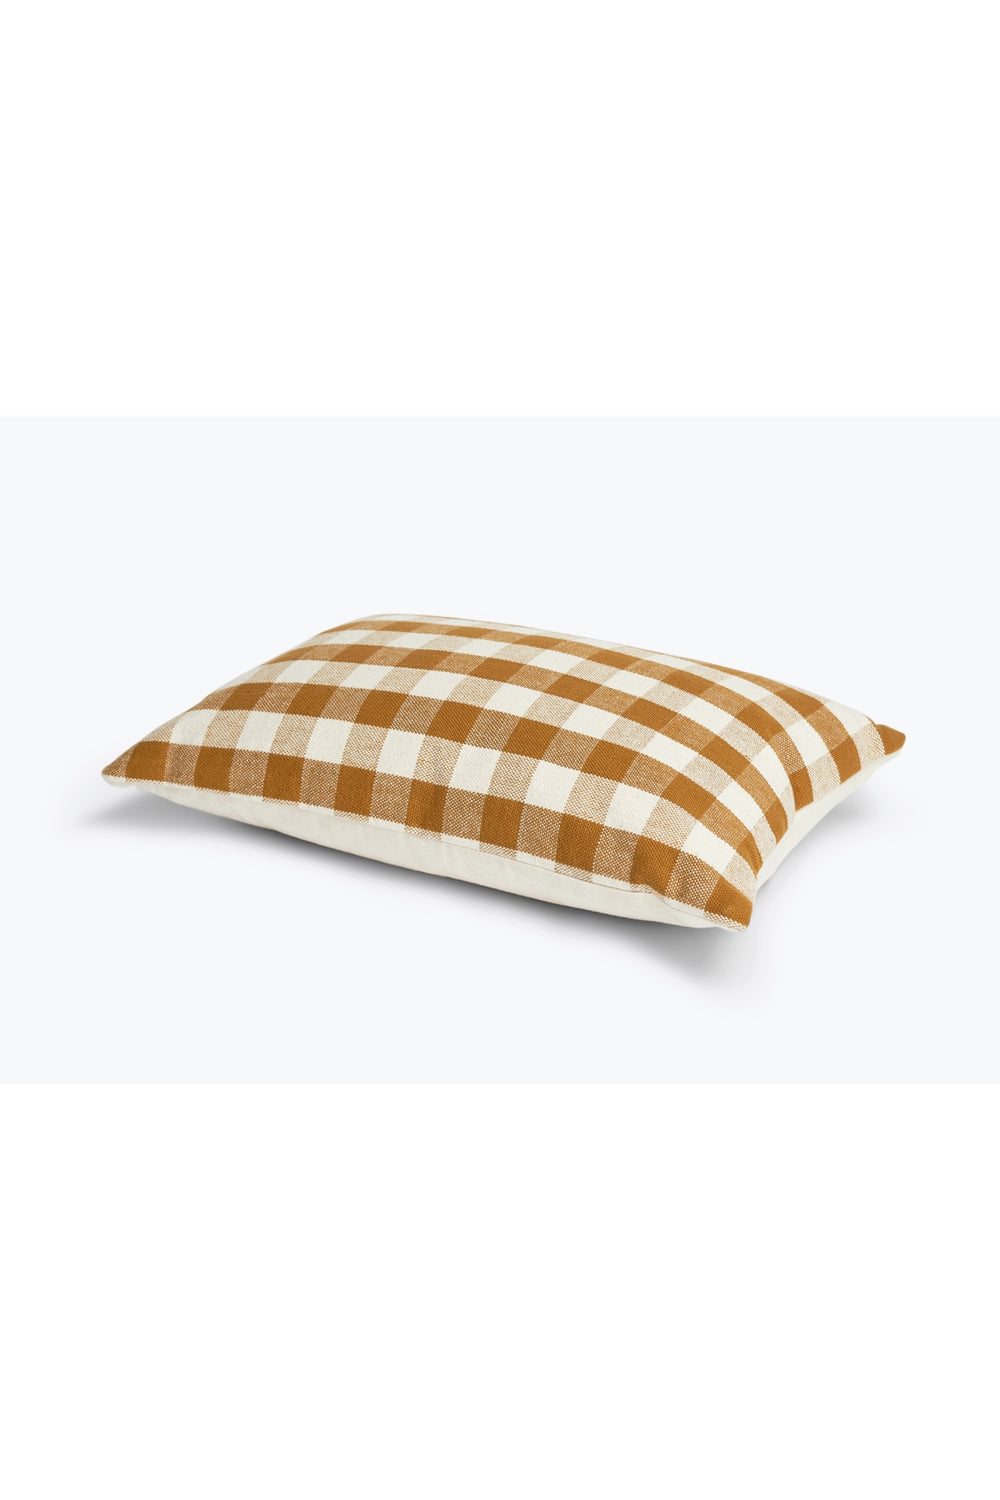 Honey Gingham Lumbar Pillow